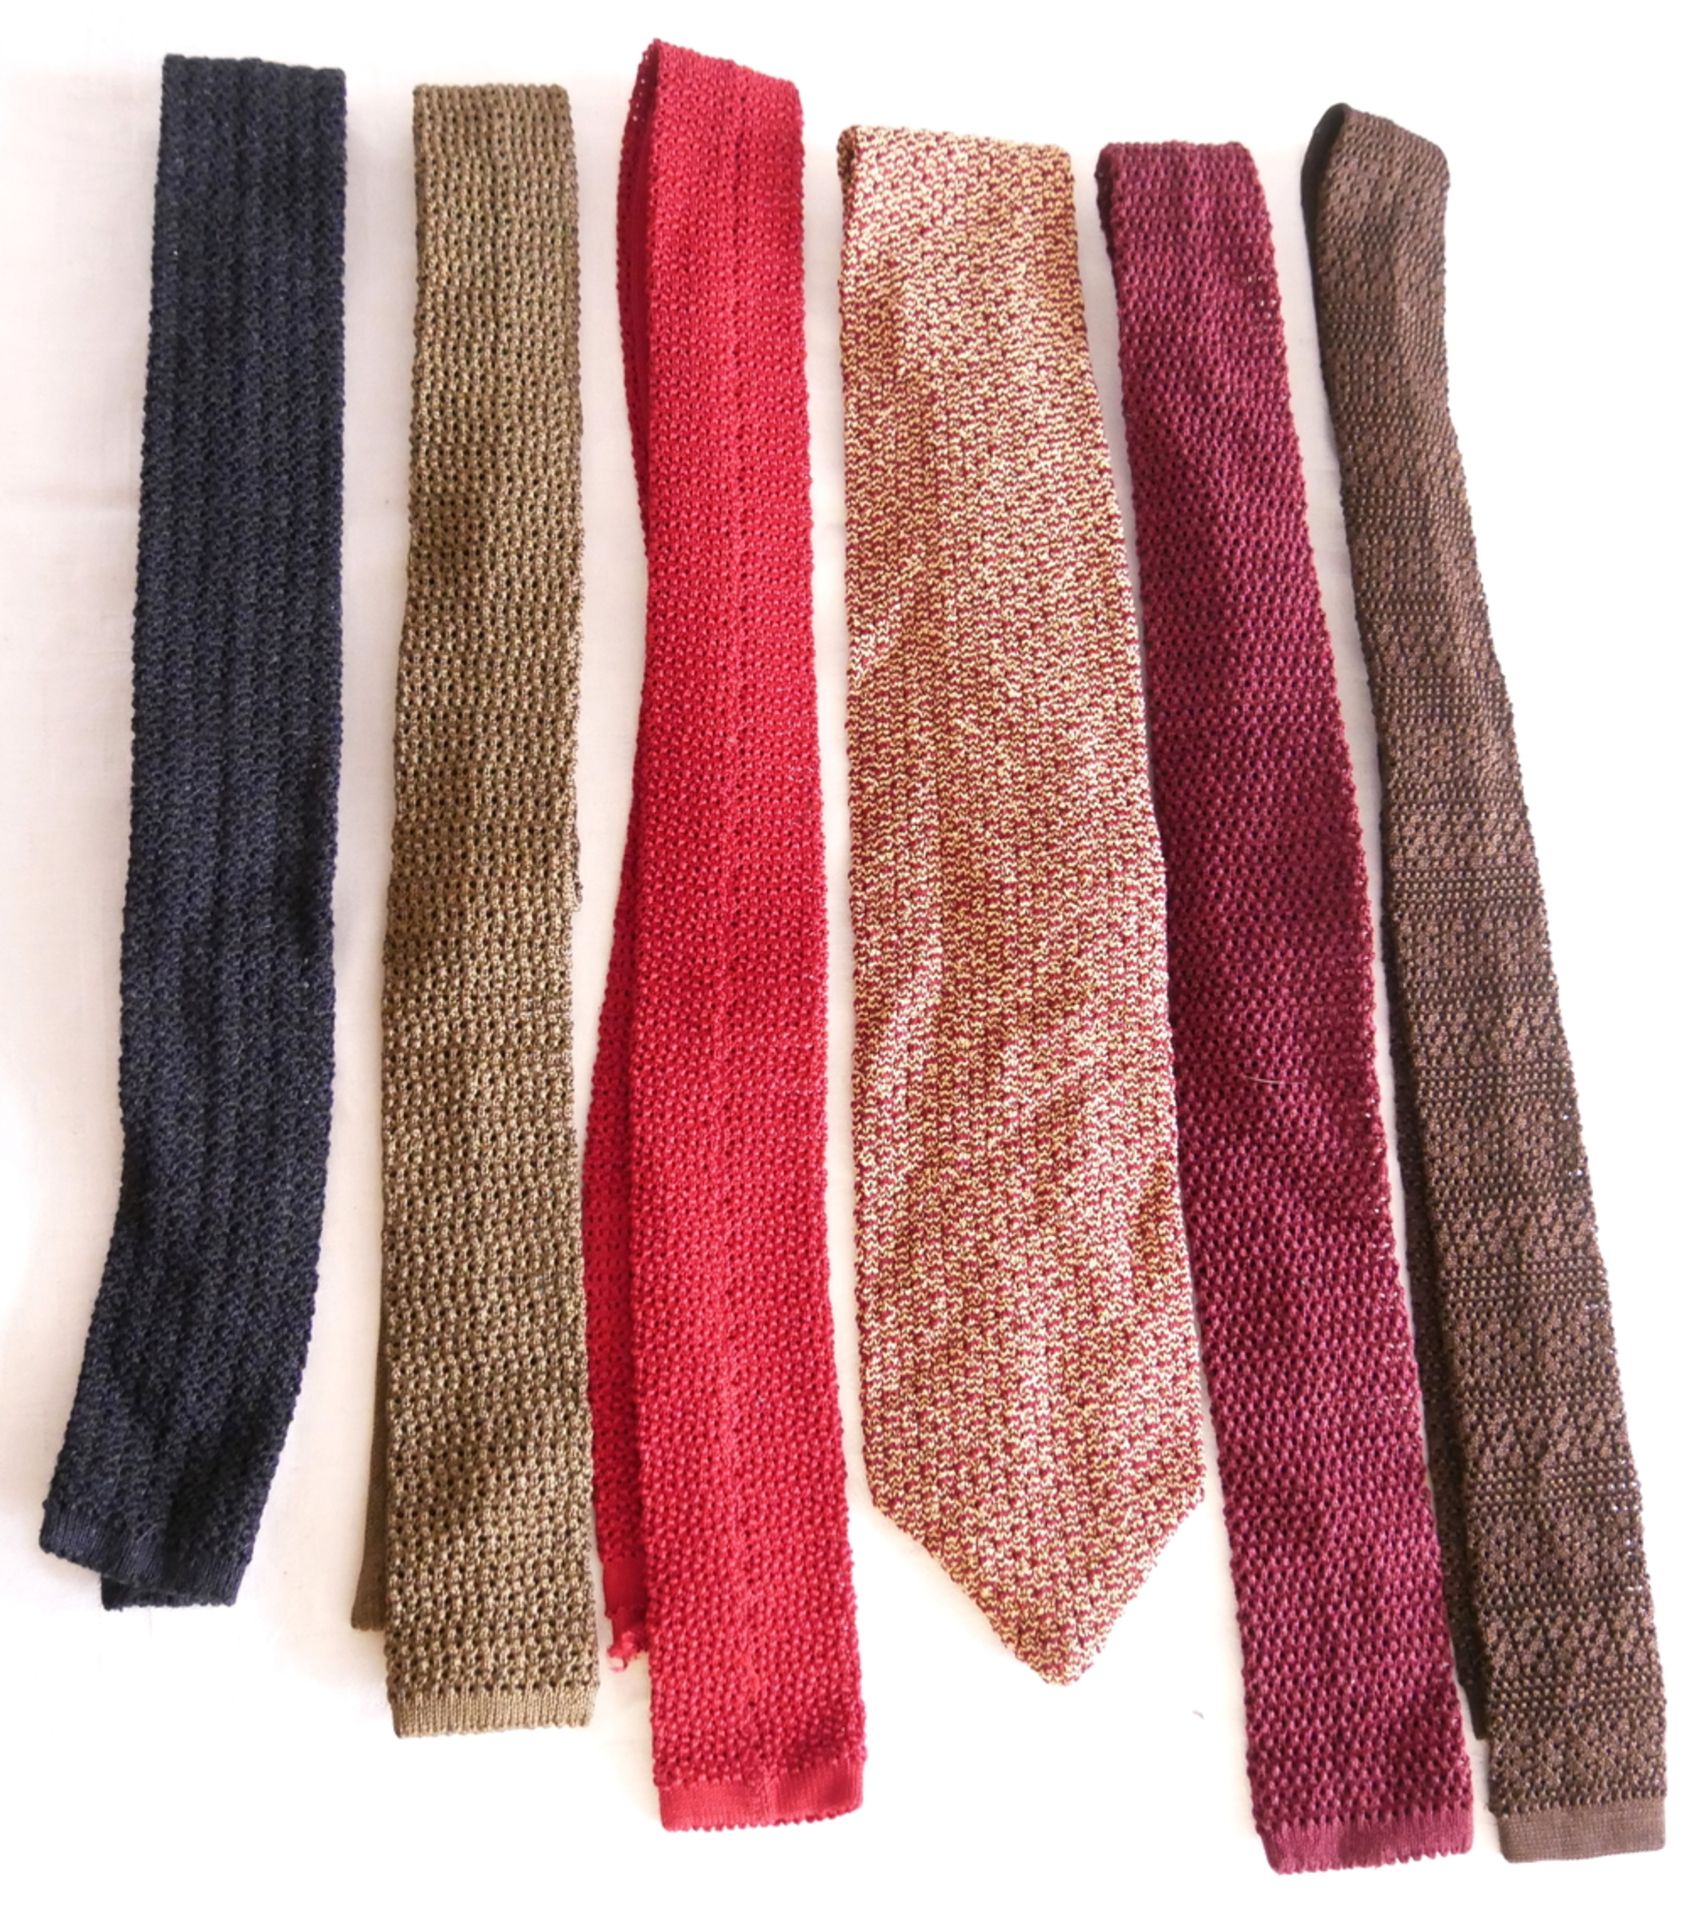 6 Krawatten, verschiedene Marken und Modelle. Guter getragener Zustand.